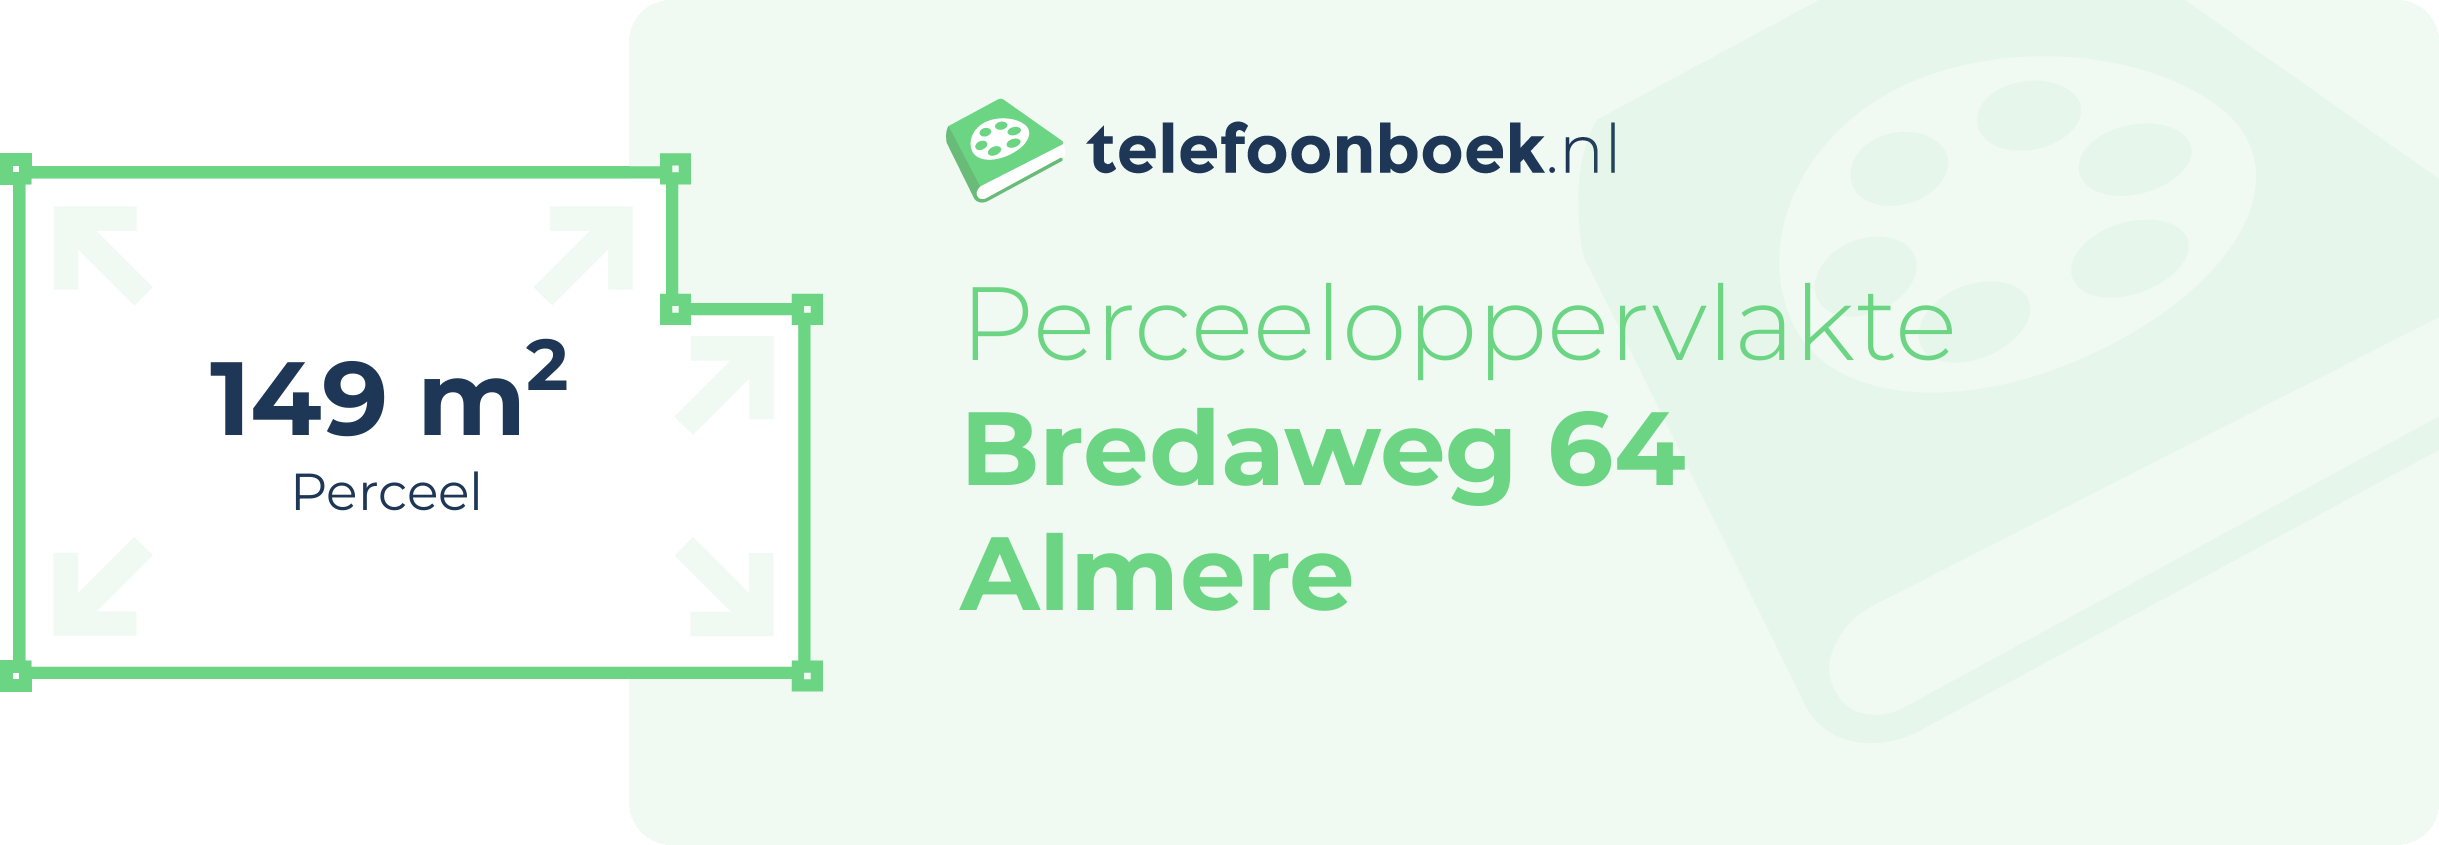 Perceeloppervlakte Bredaweg 64 Almere